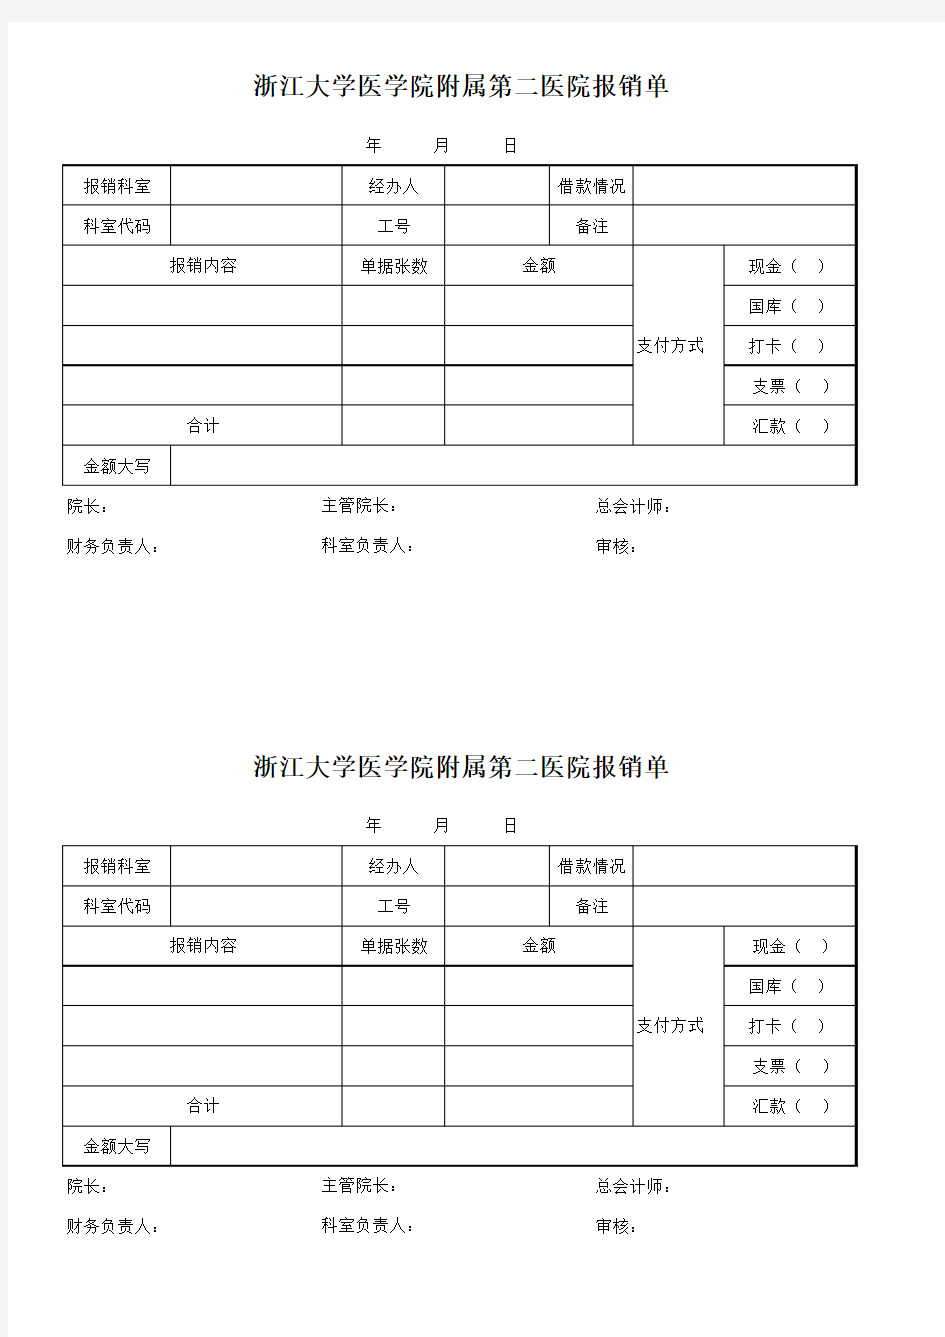 浙江大学医学院附属第二医院报销单(2017.06.21更新)